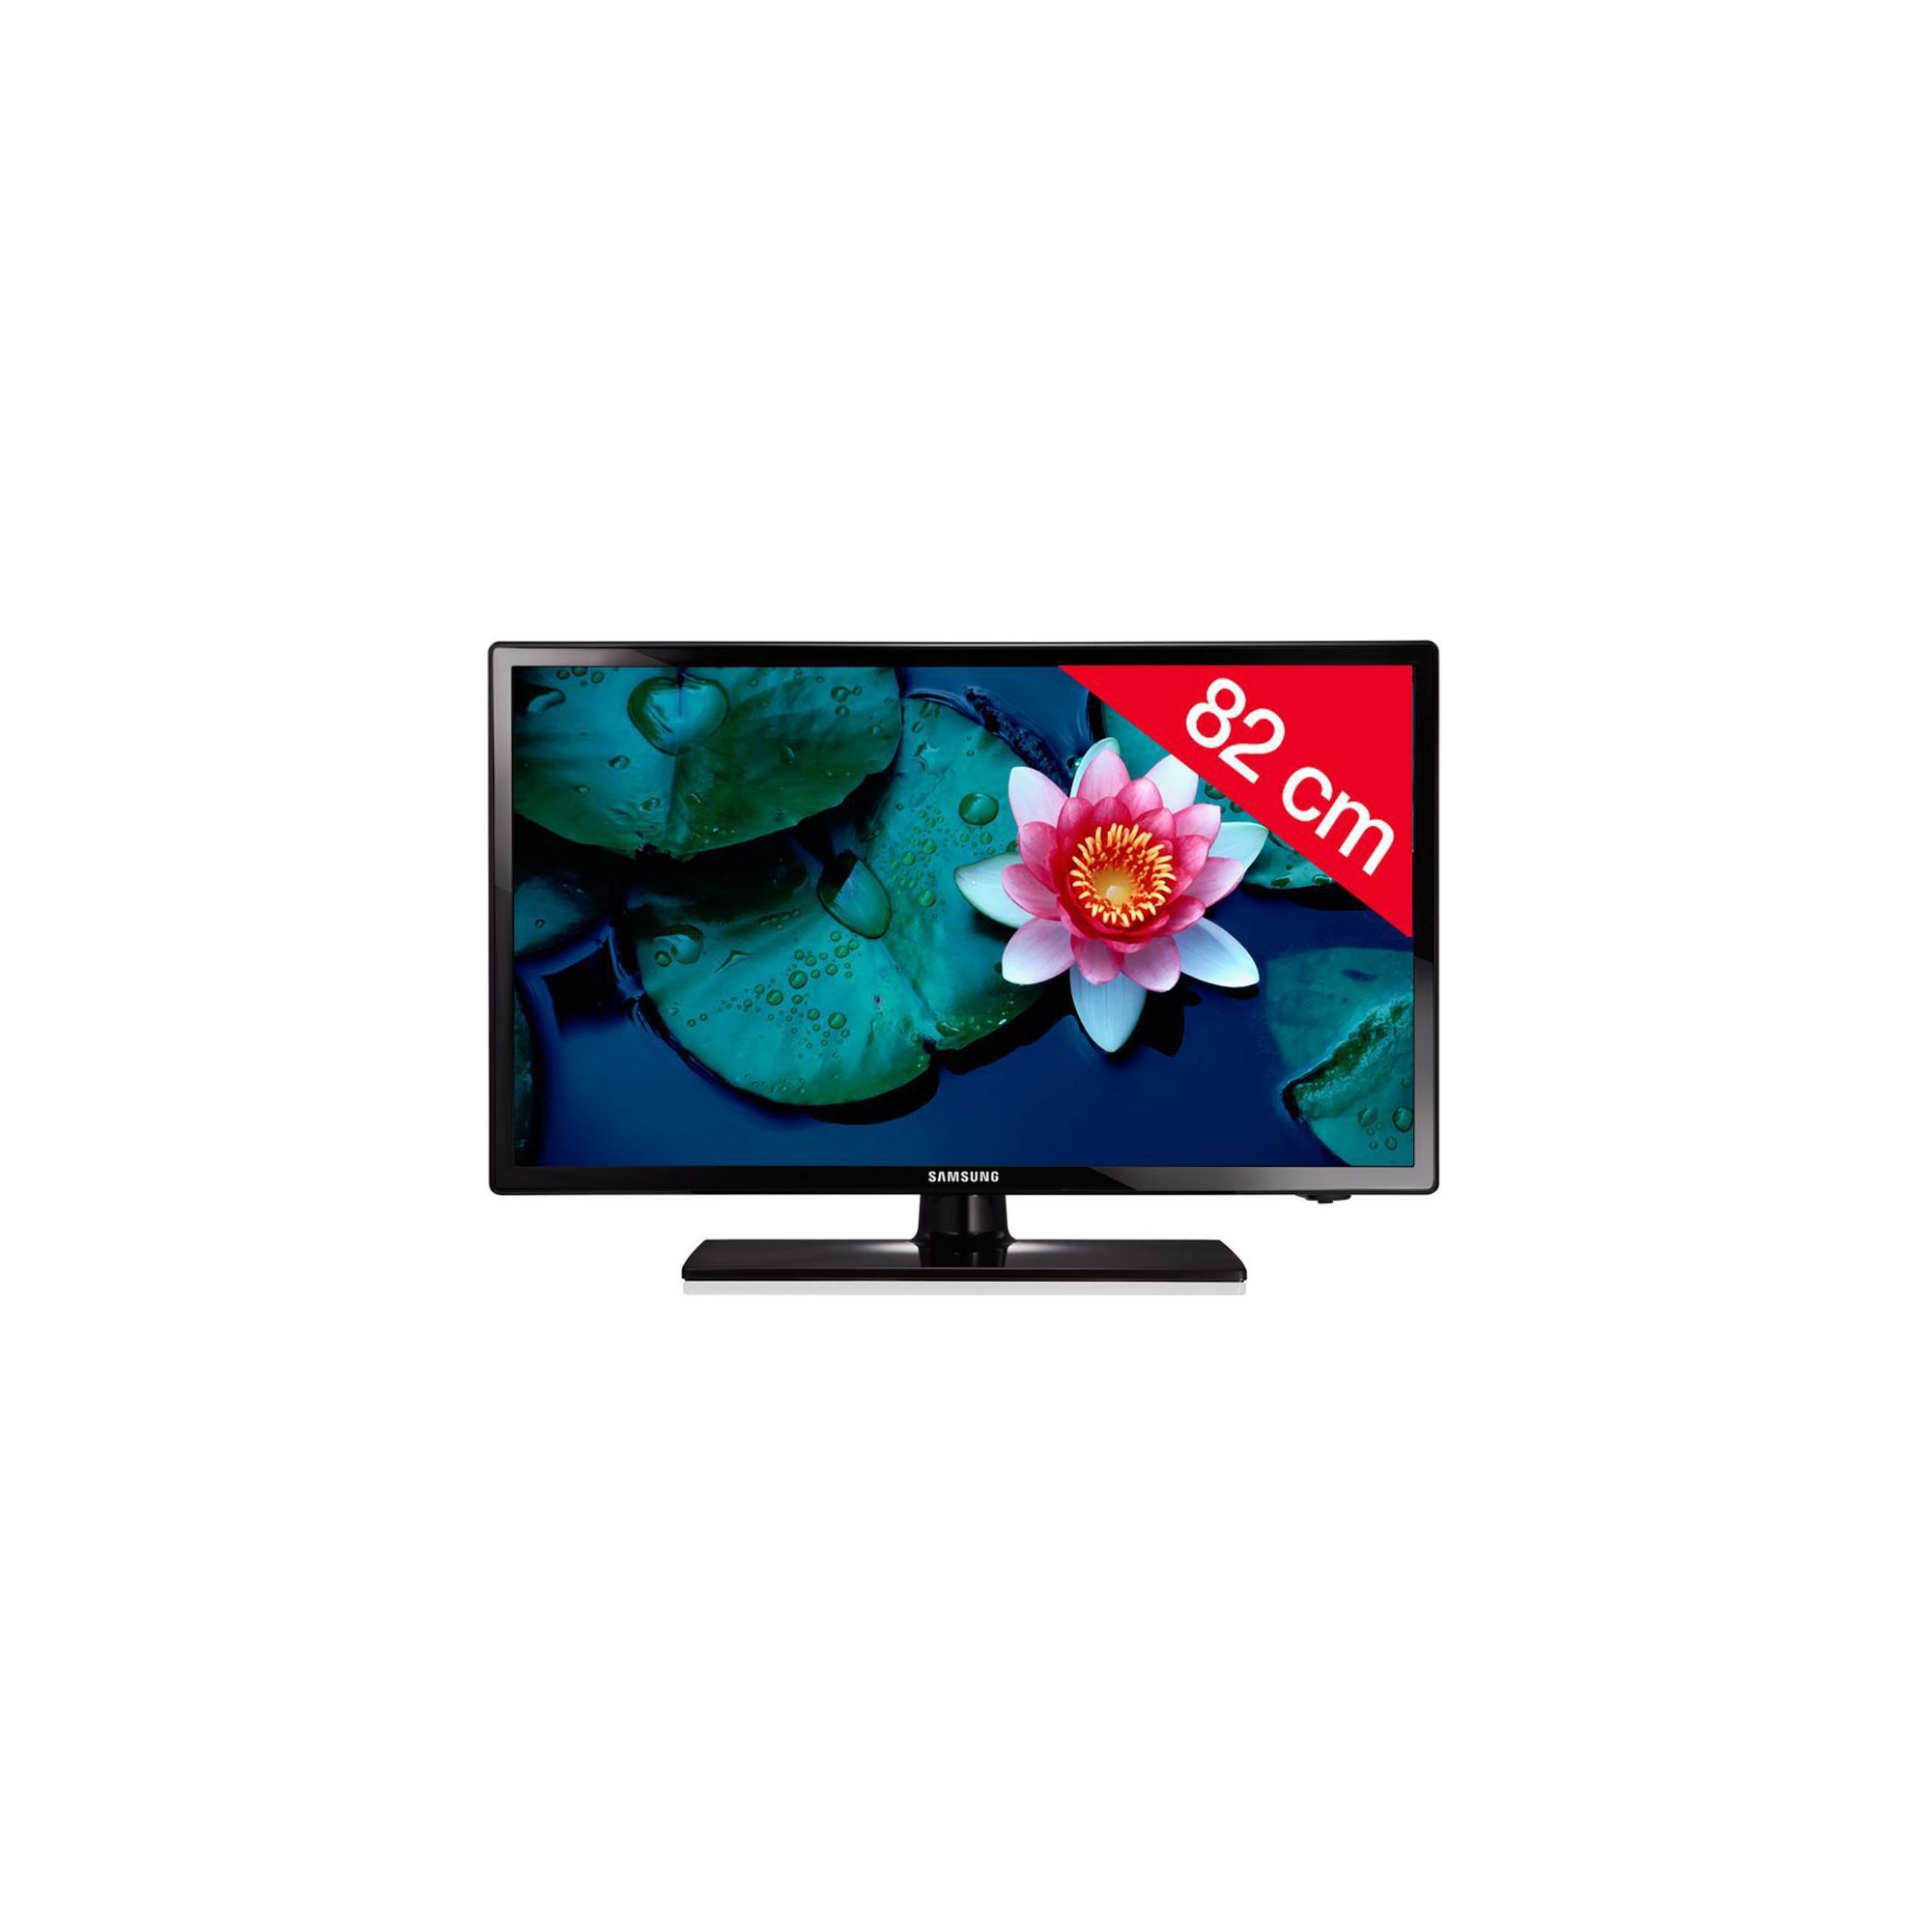 Samsung UE32EH4003 – 32” 4 Series LED-backlit LCD TV